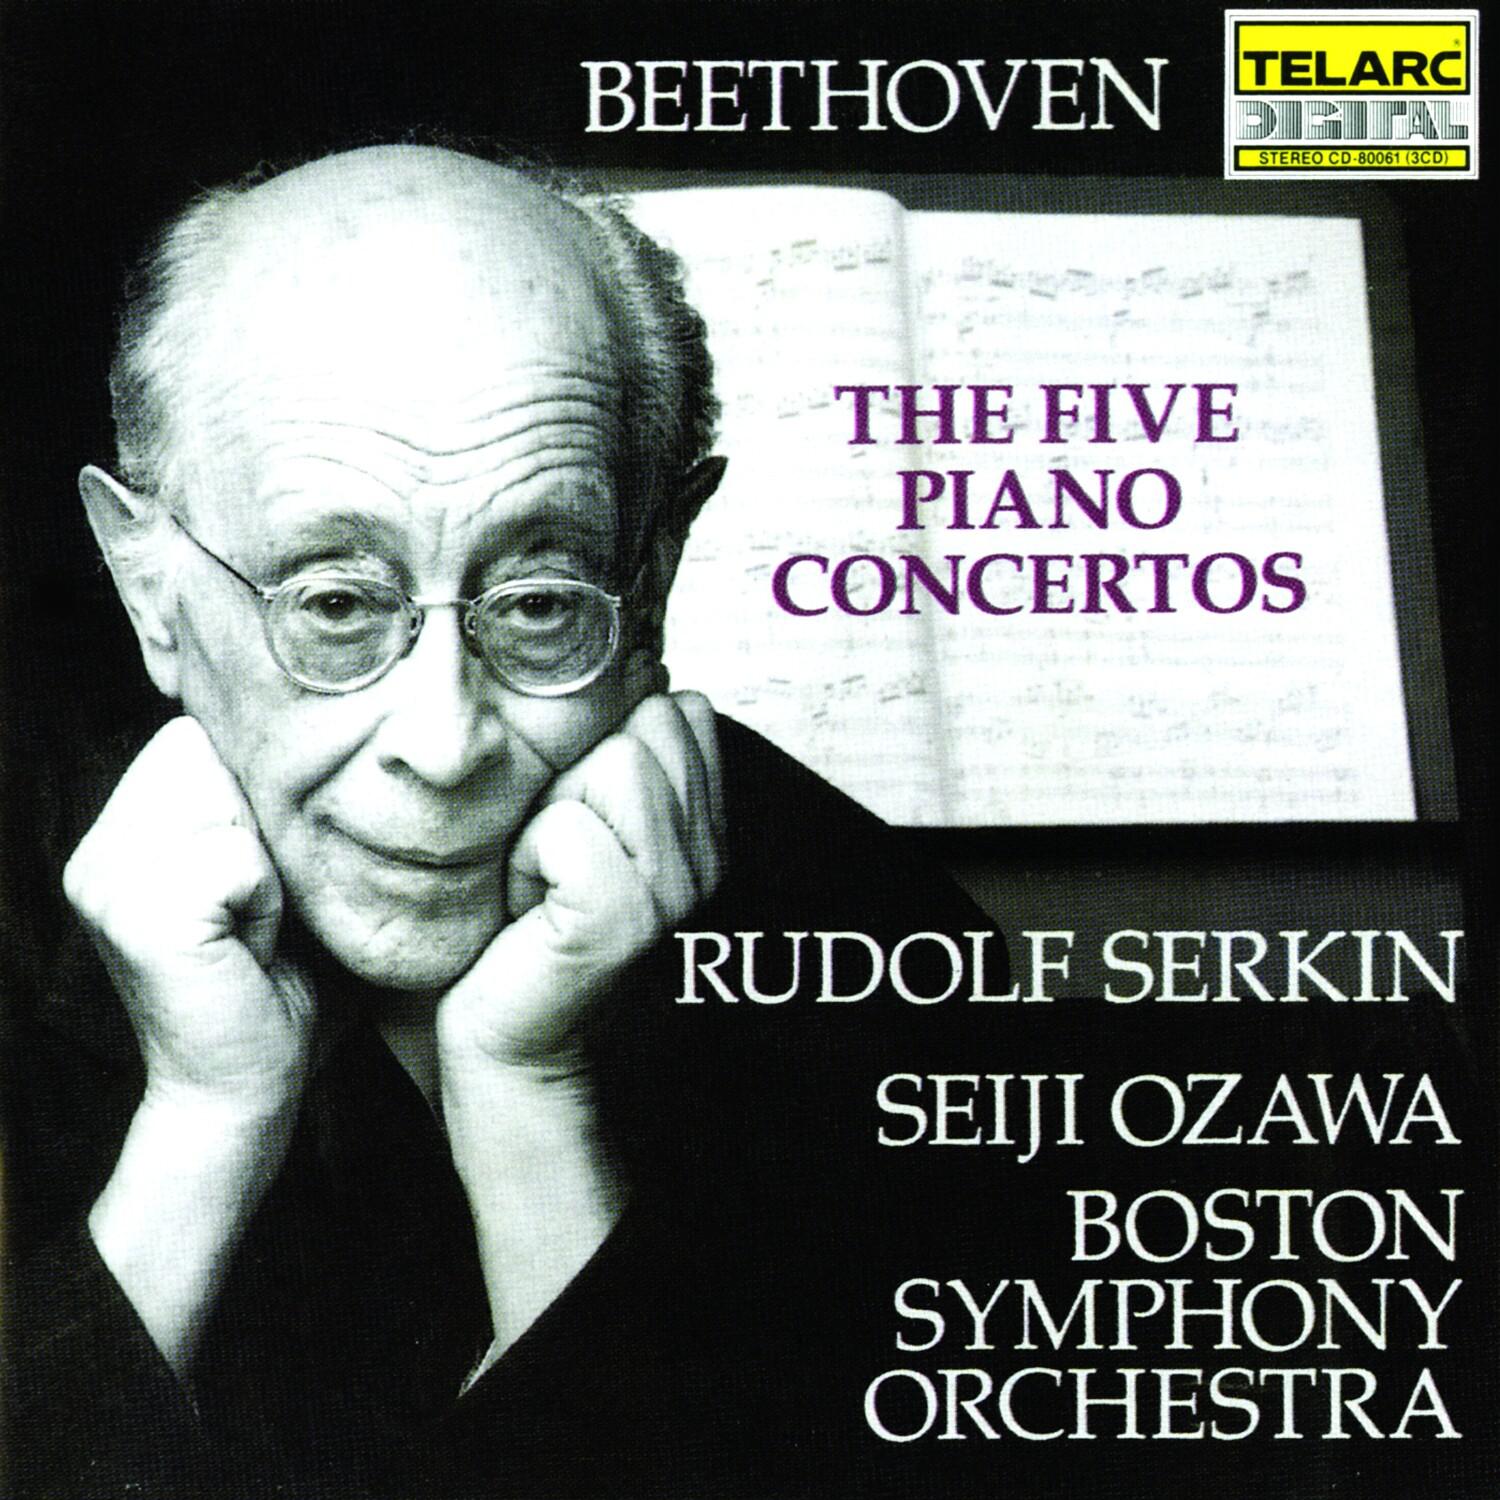 Concerto No. 1 in C, Op. 15: I. Allegro con brio